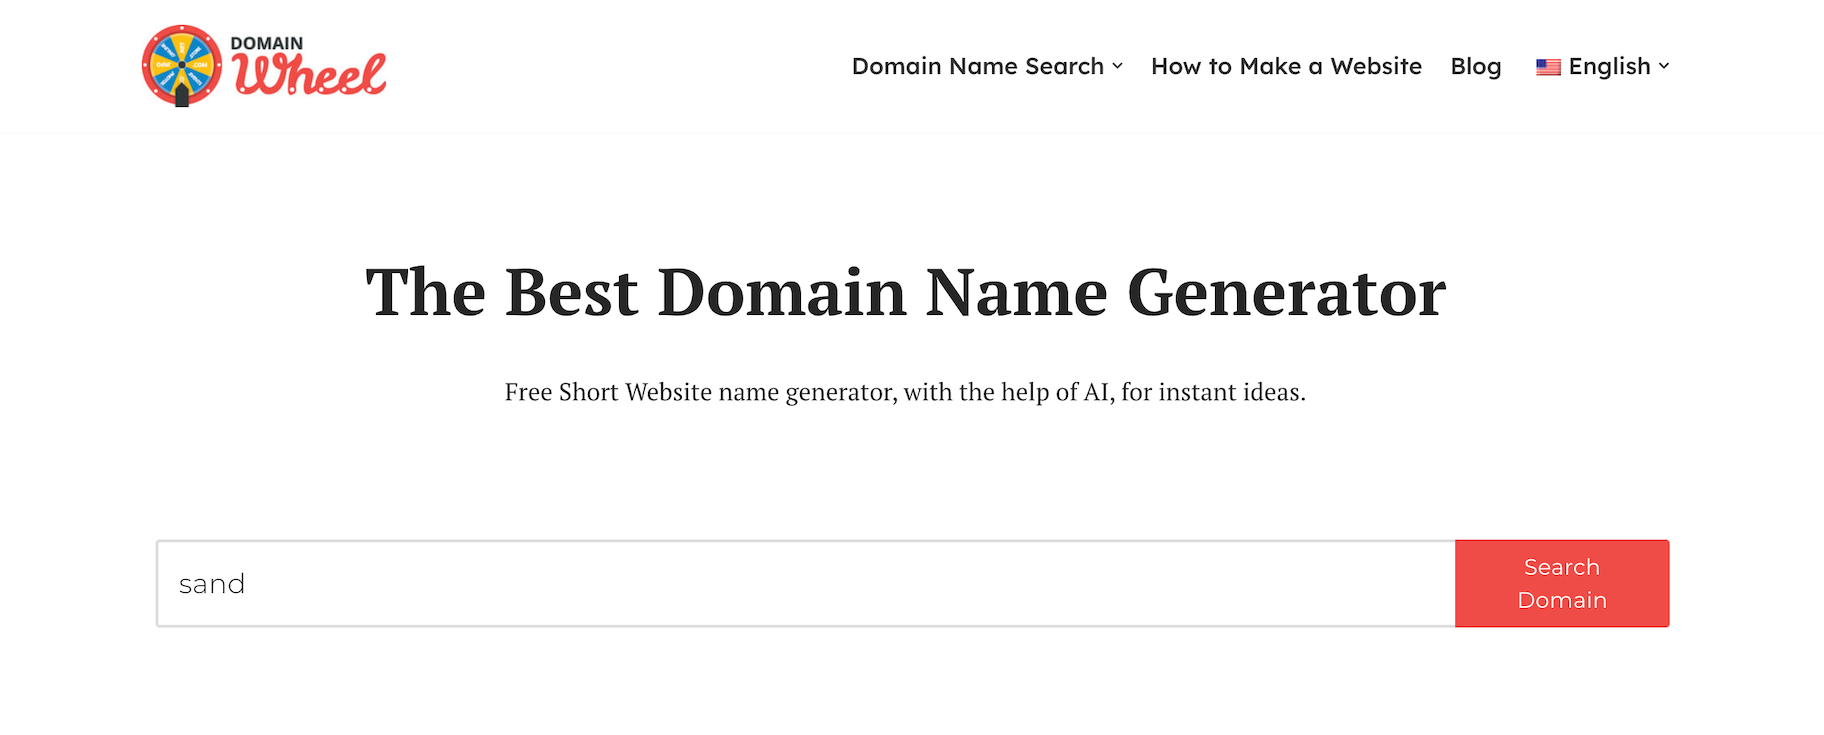 DomainWheel domain generator